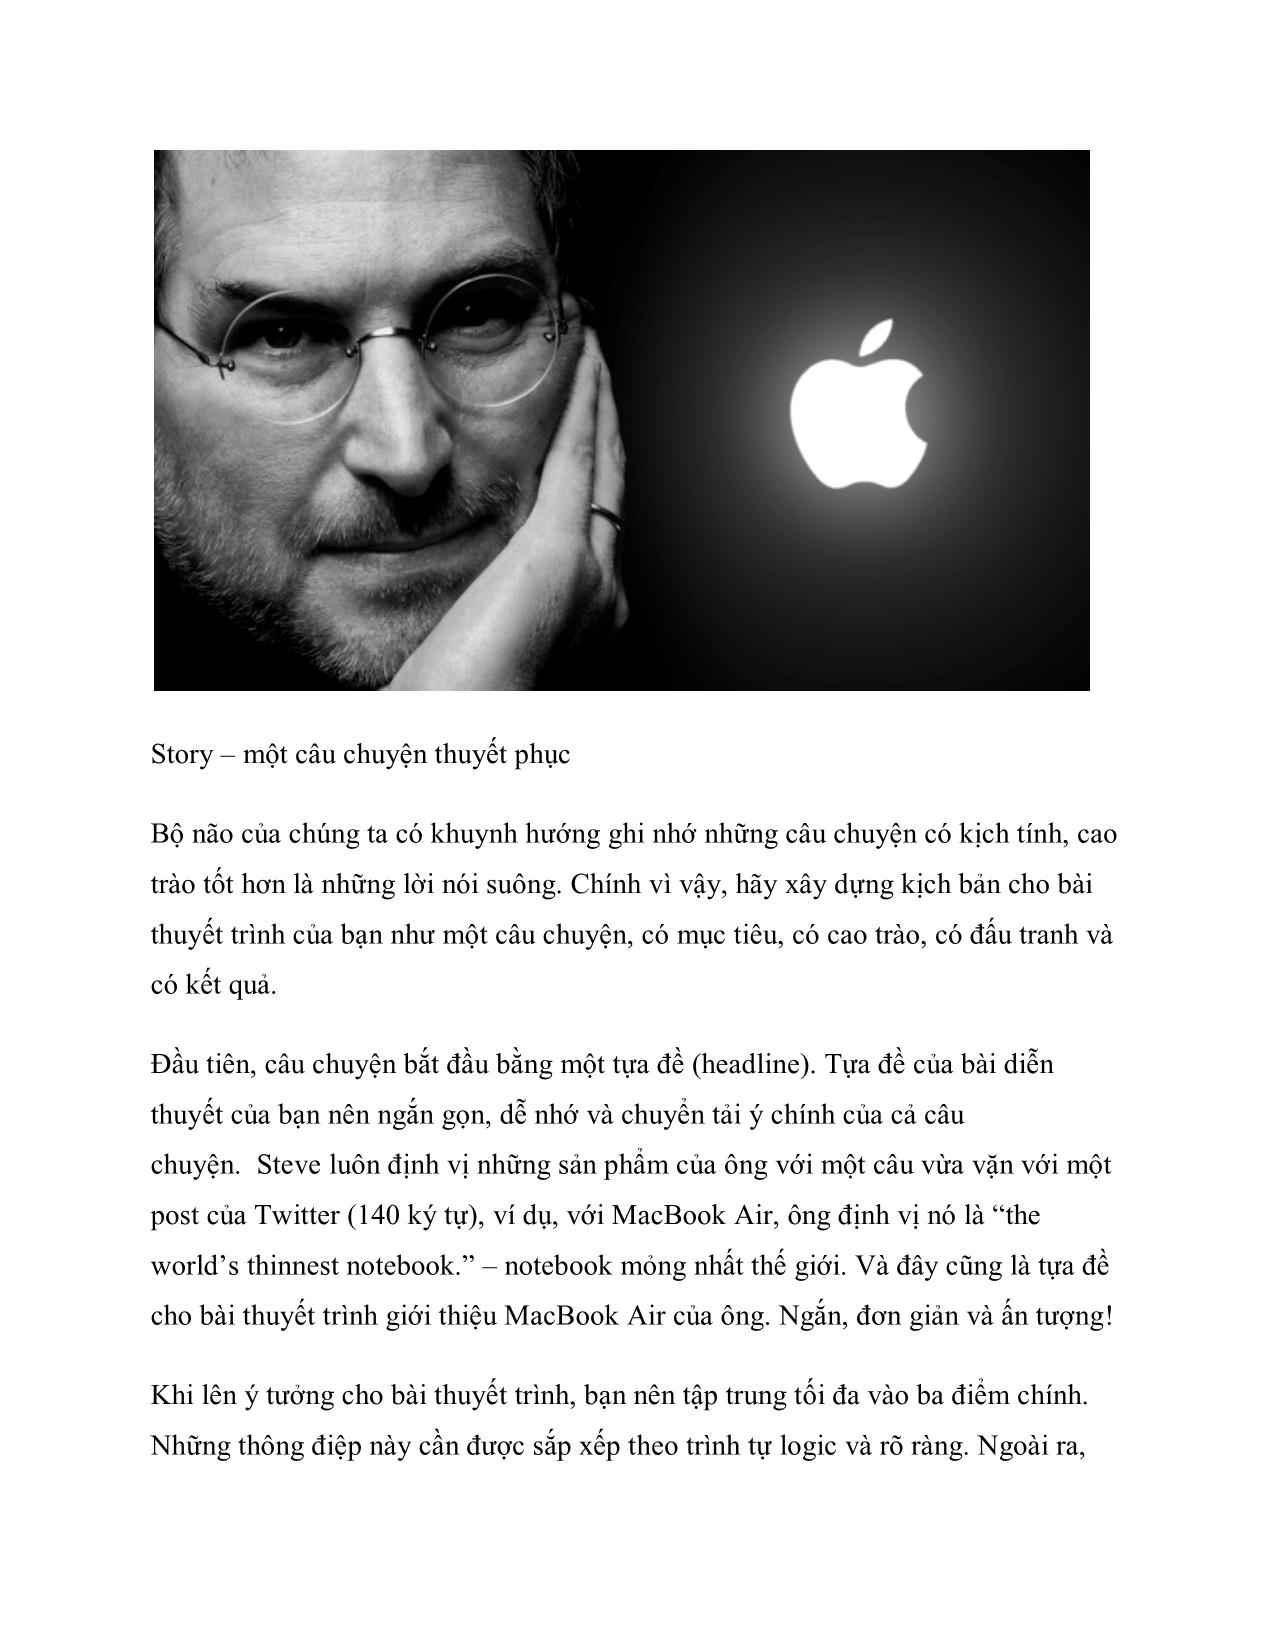 Nguyên tắc 3S trong bài thuyết trình của Steve Jobs trang 2